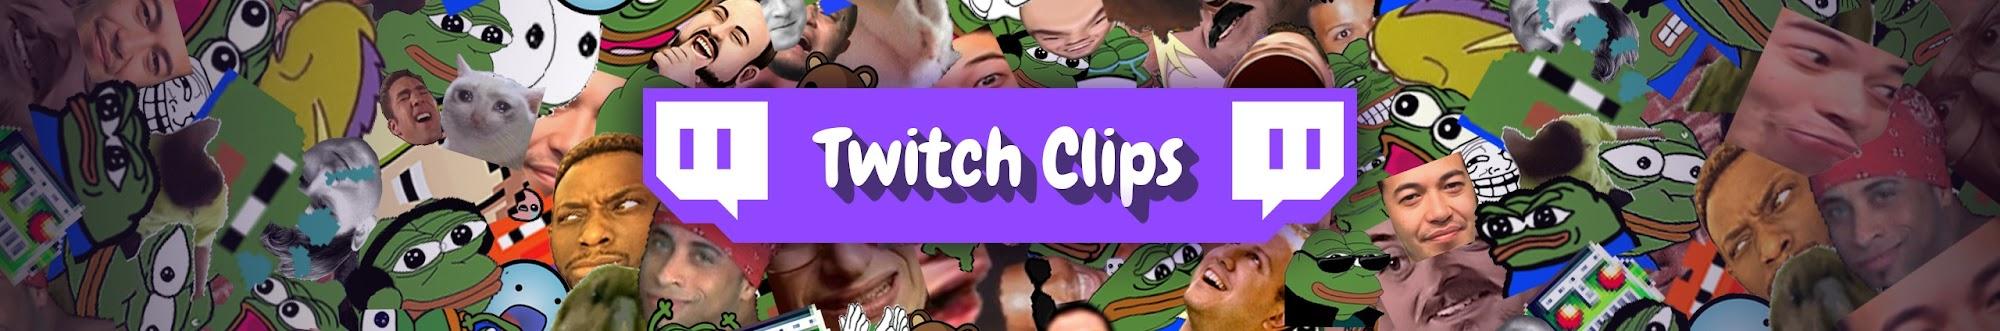 Twitch Clips